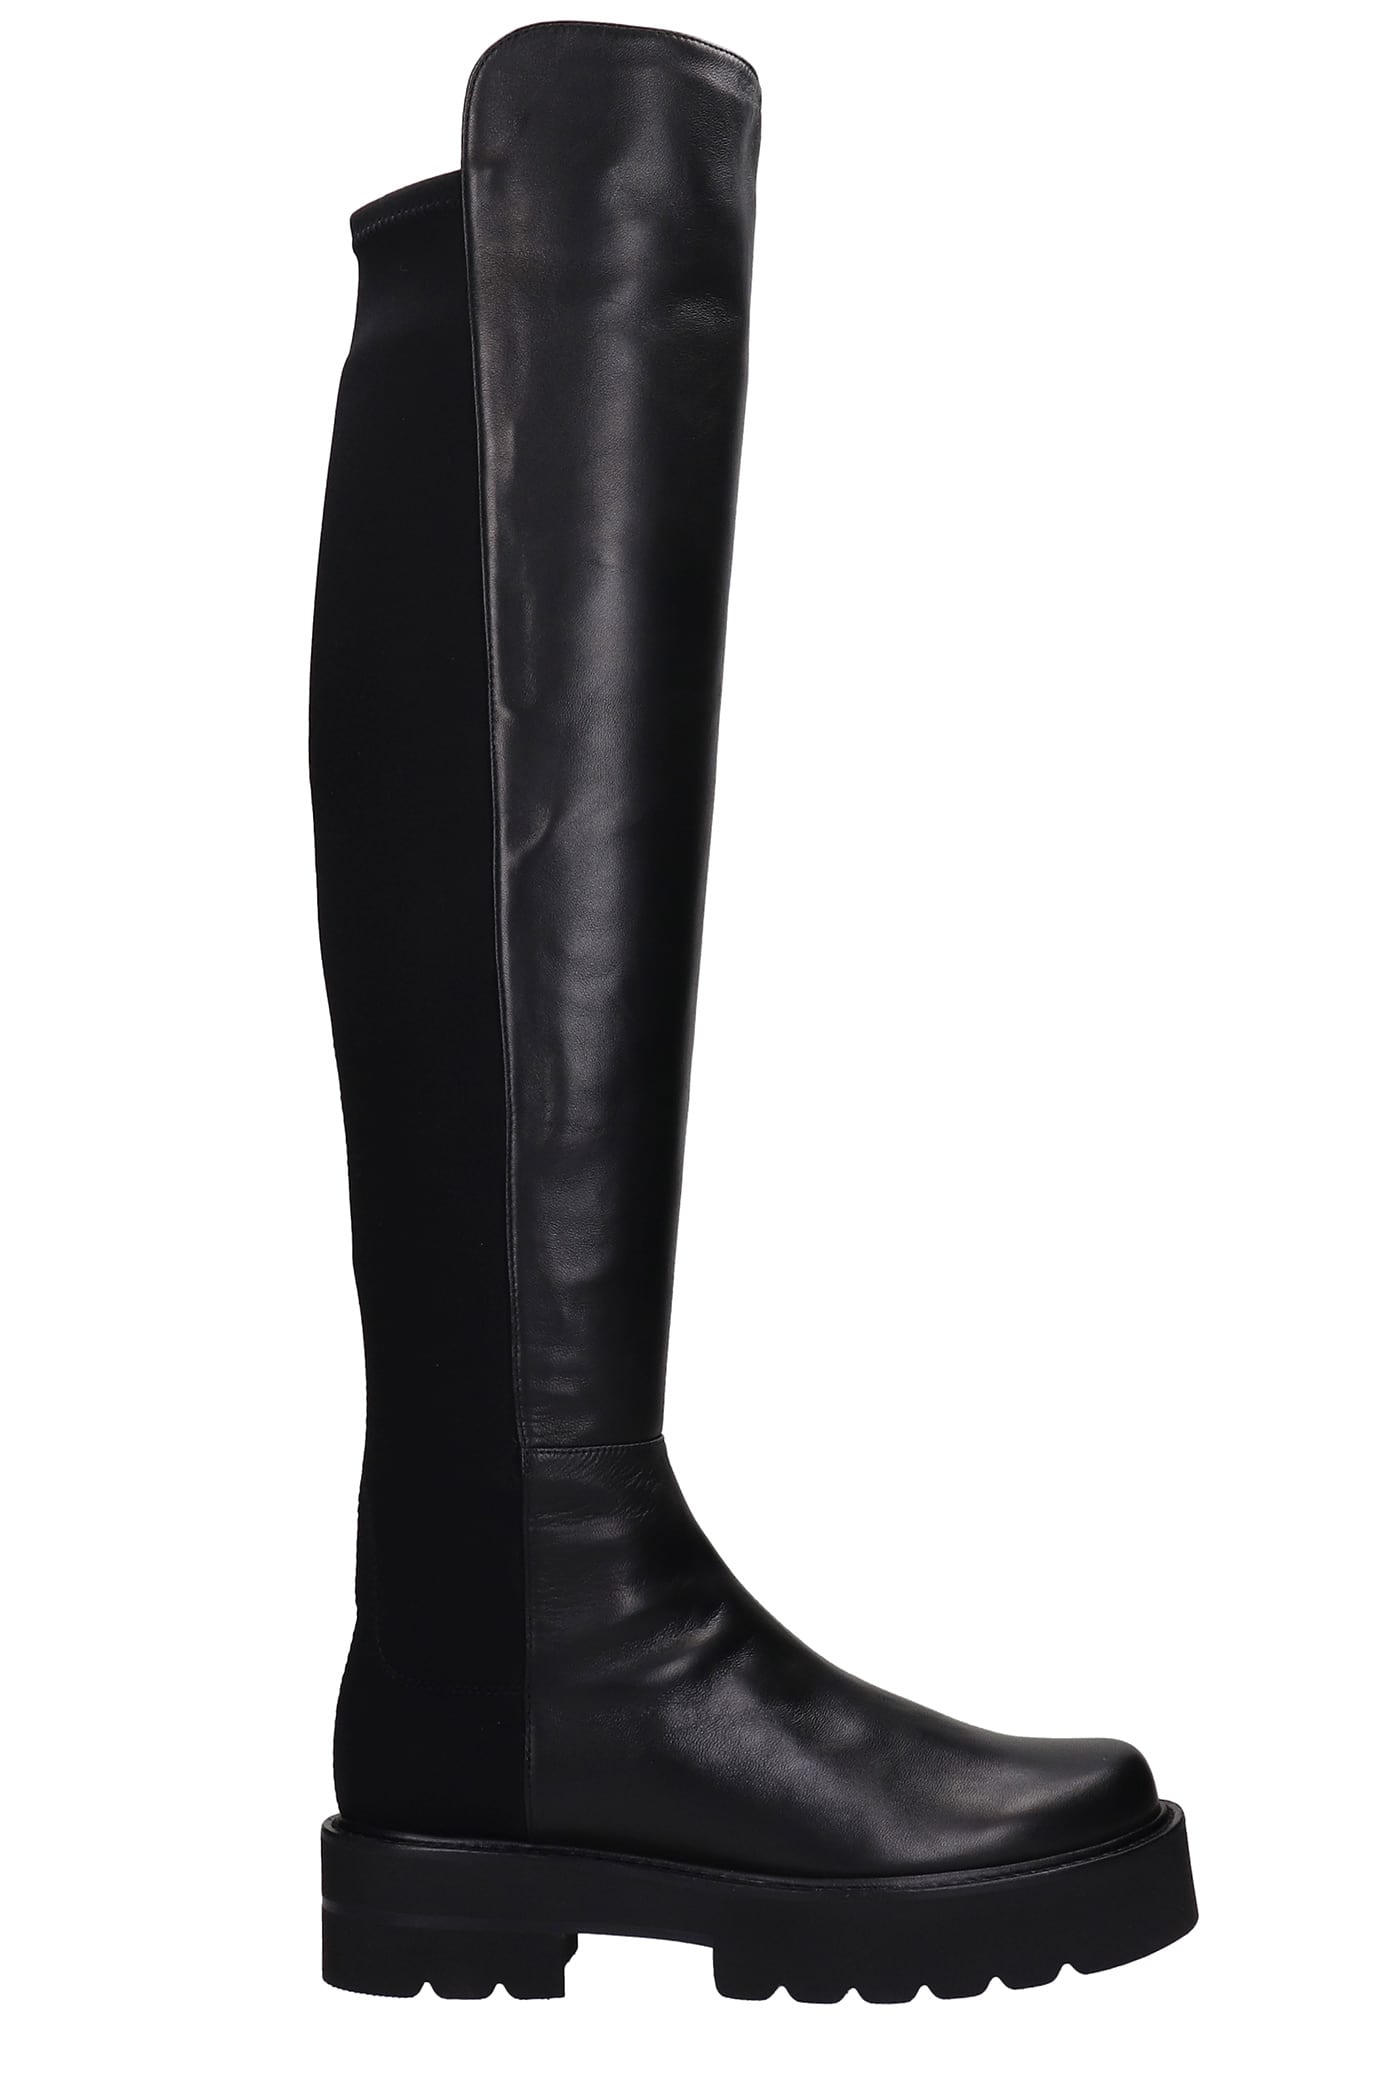 Stuart Weitzman Ultrafit Low Heels Boots In Black Leather